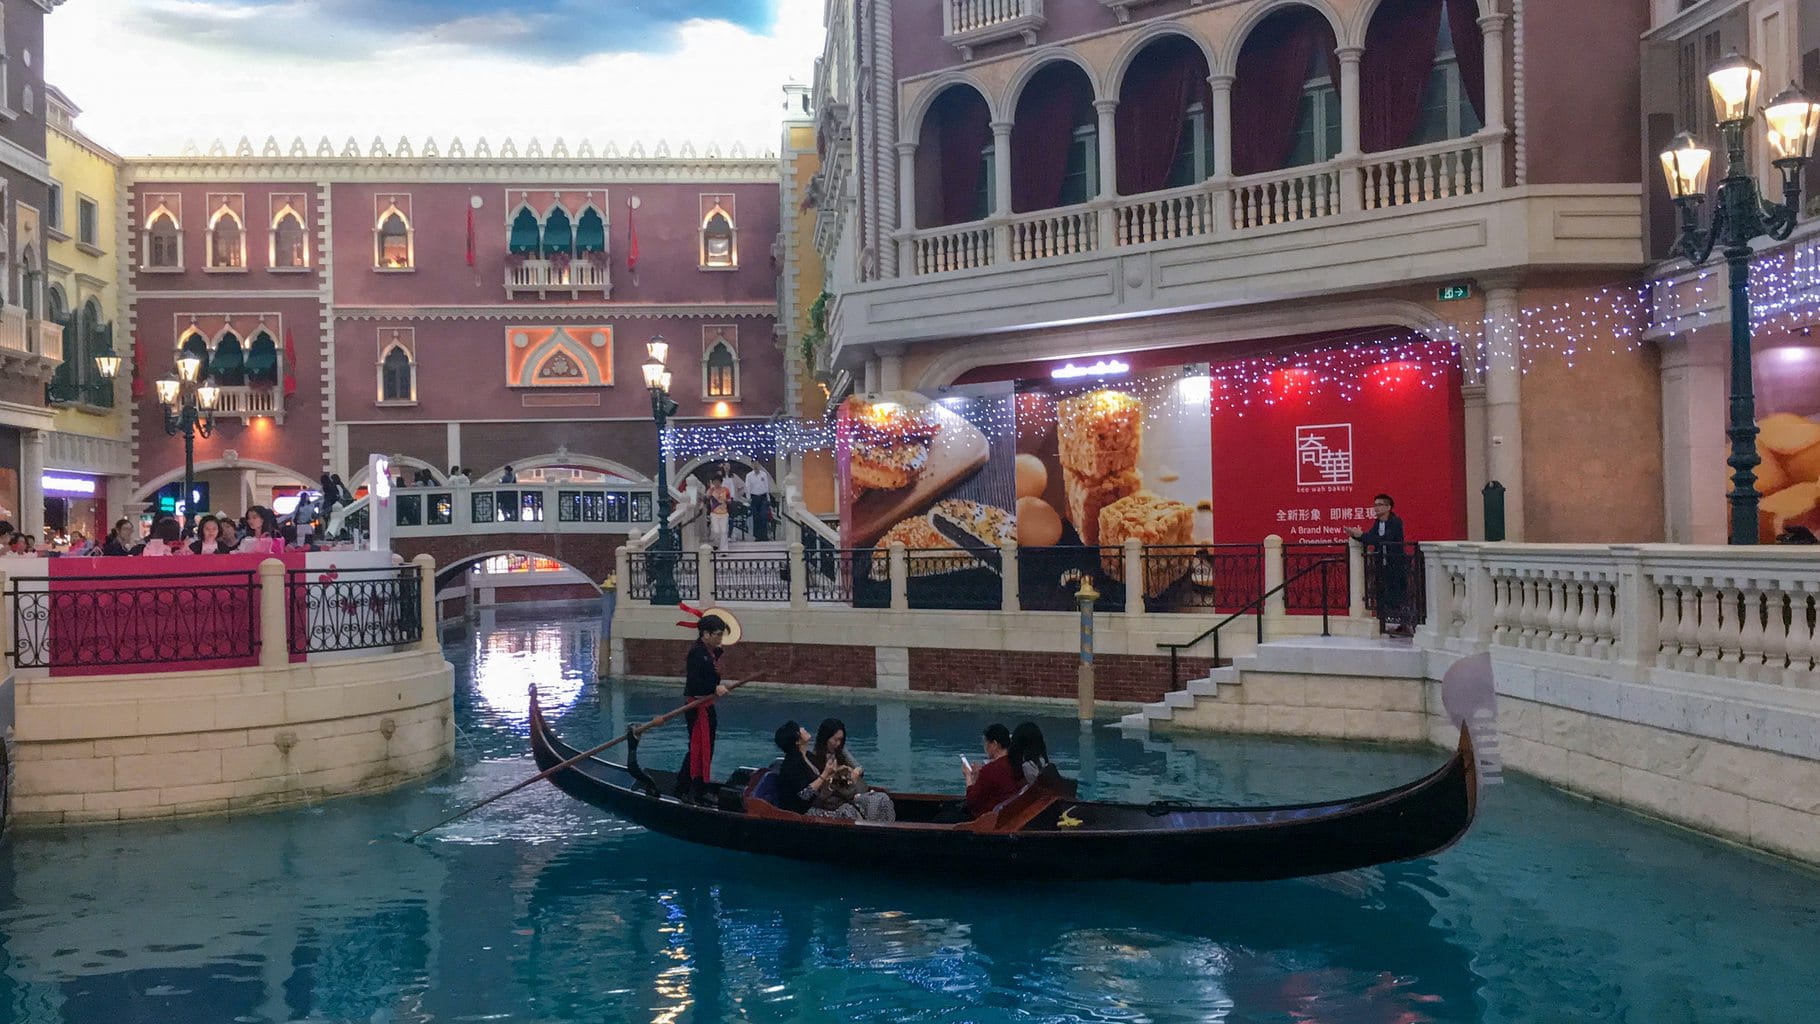 "Gondola at the Venetian Macau"